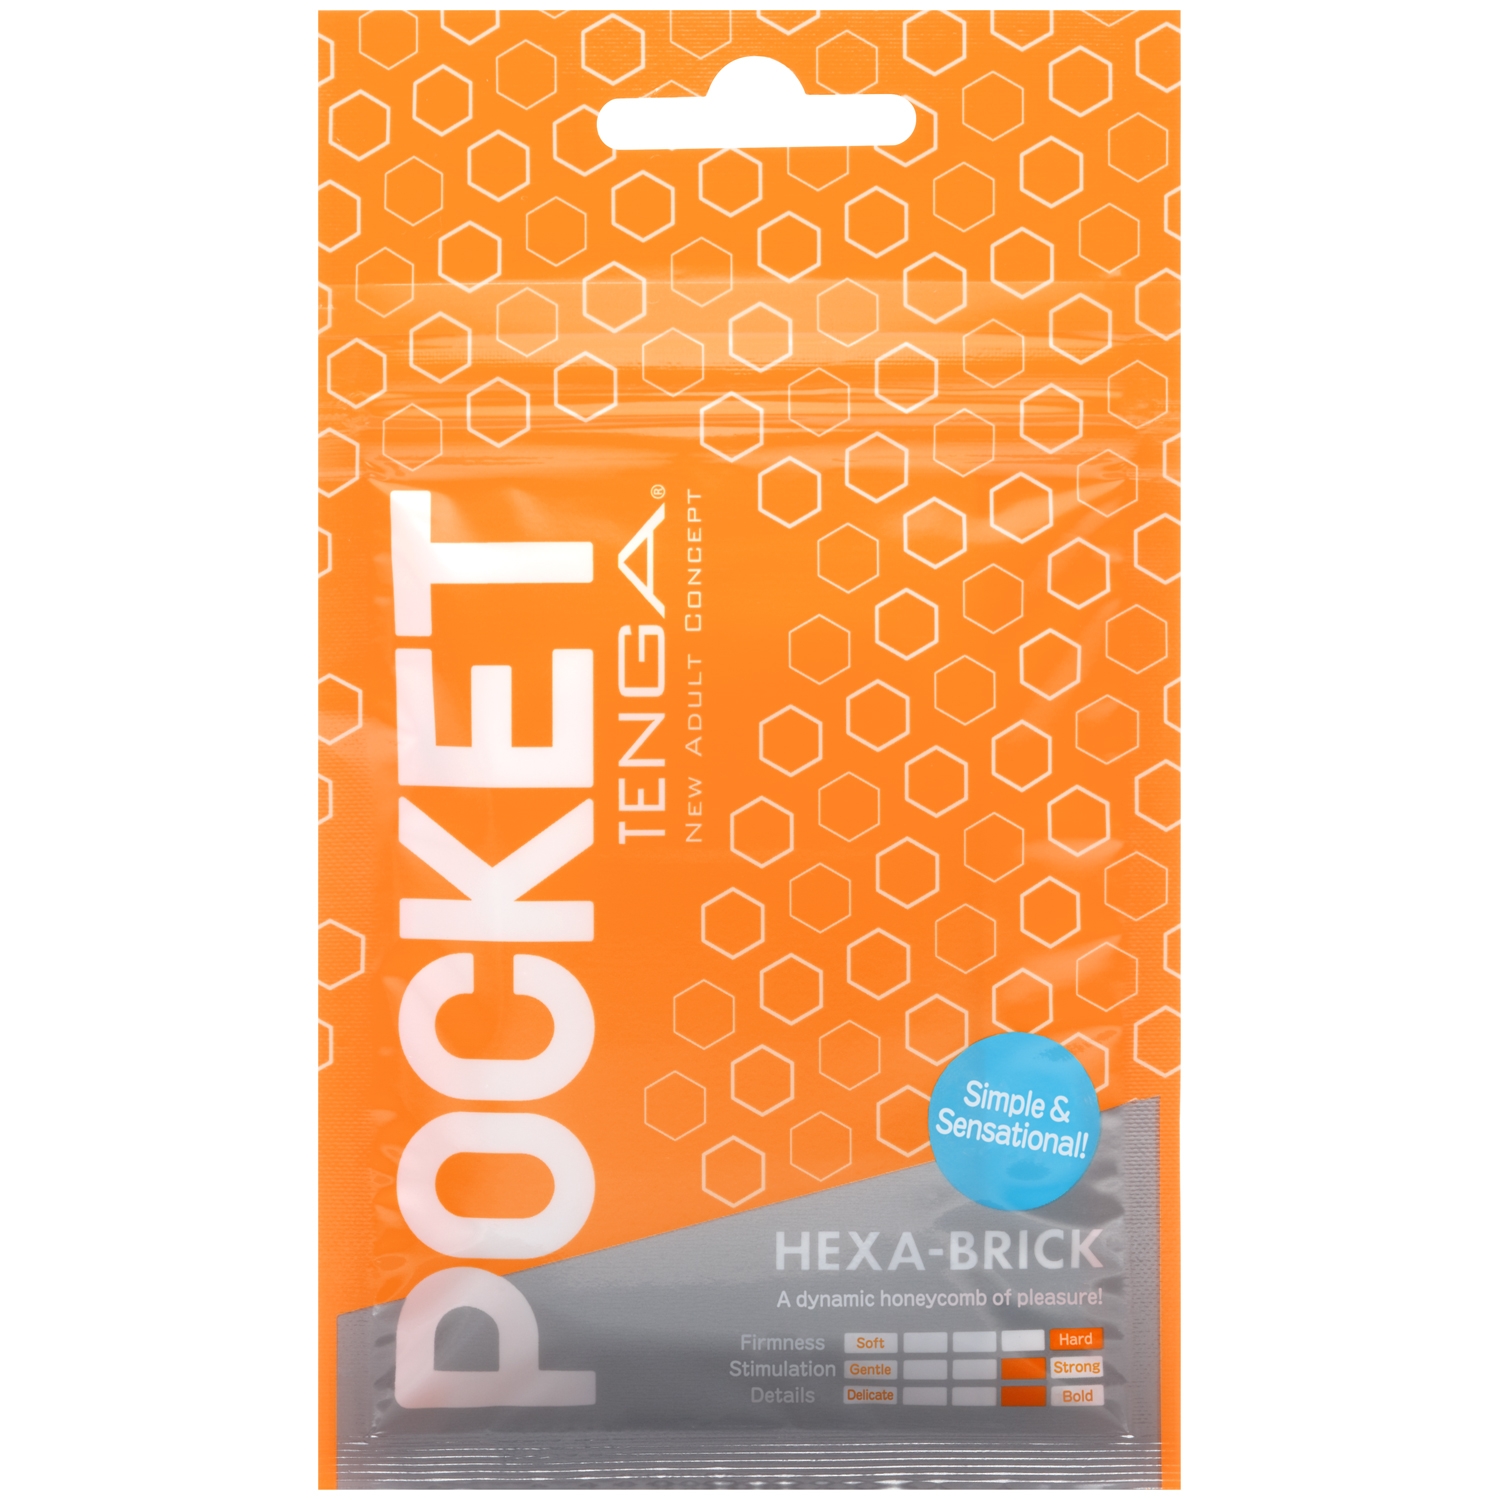 TENGA Pocket Hexa-Brick onaniprodukt - Vit | Män//Onaniprodukter//TENGA//Handjob Stroker//Priser från 49 kr | Intimast